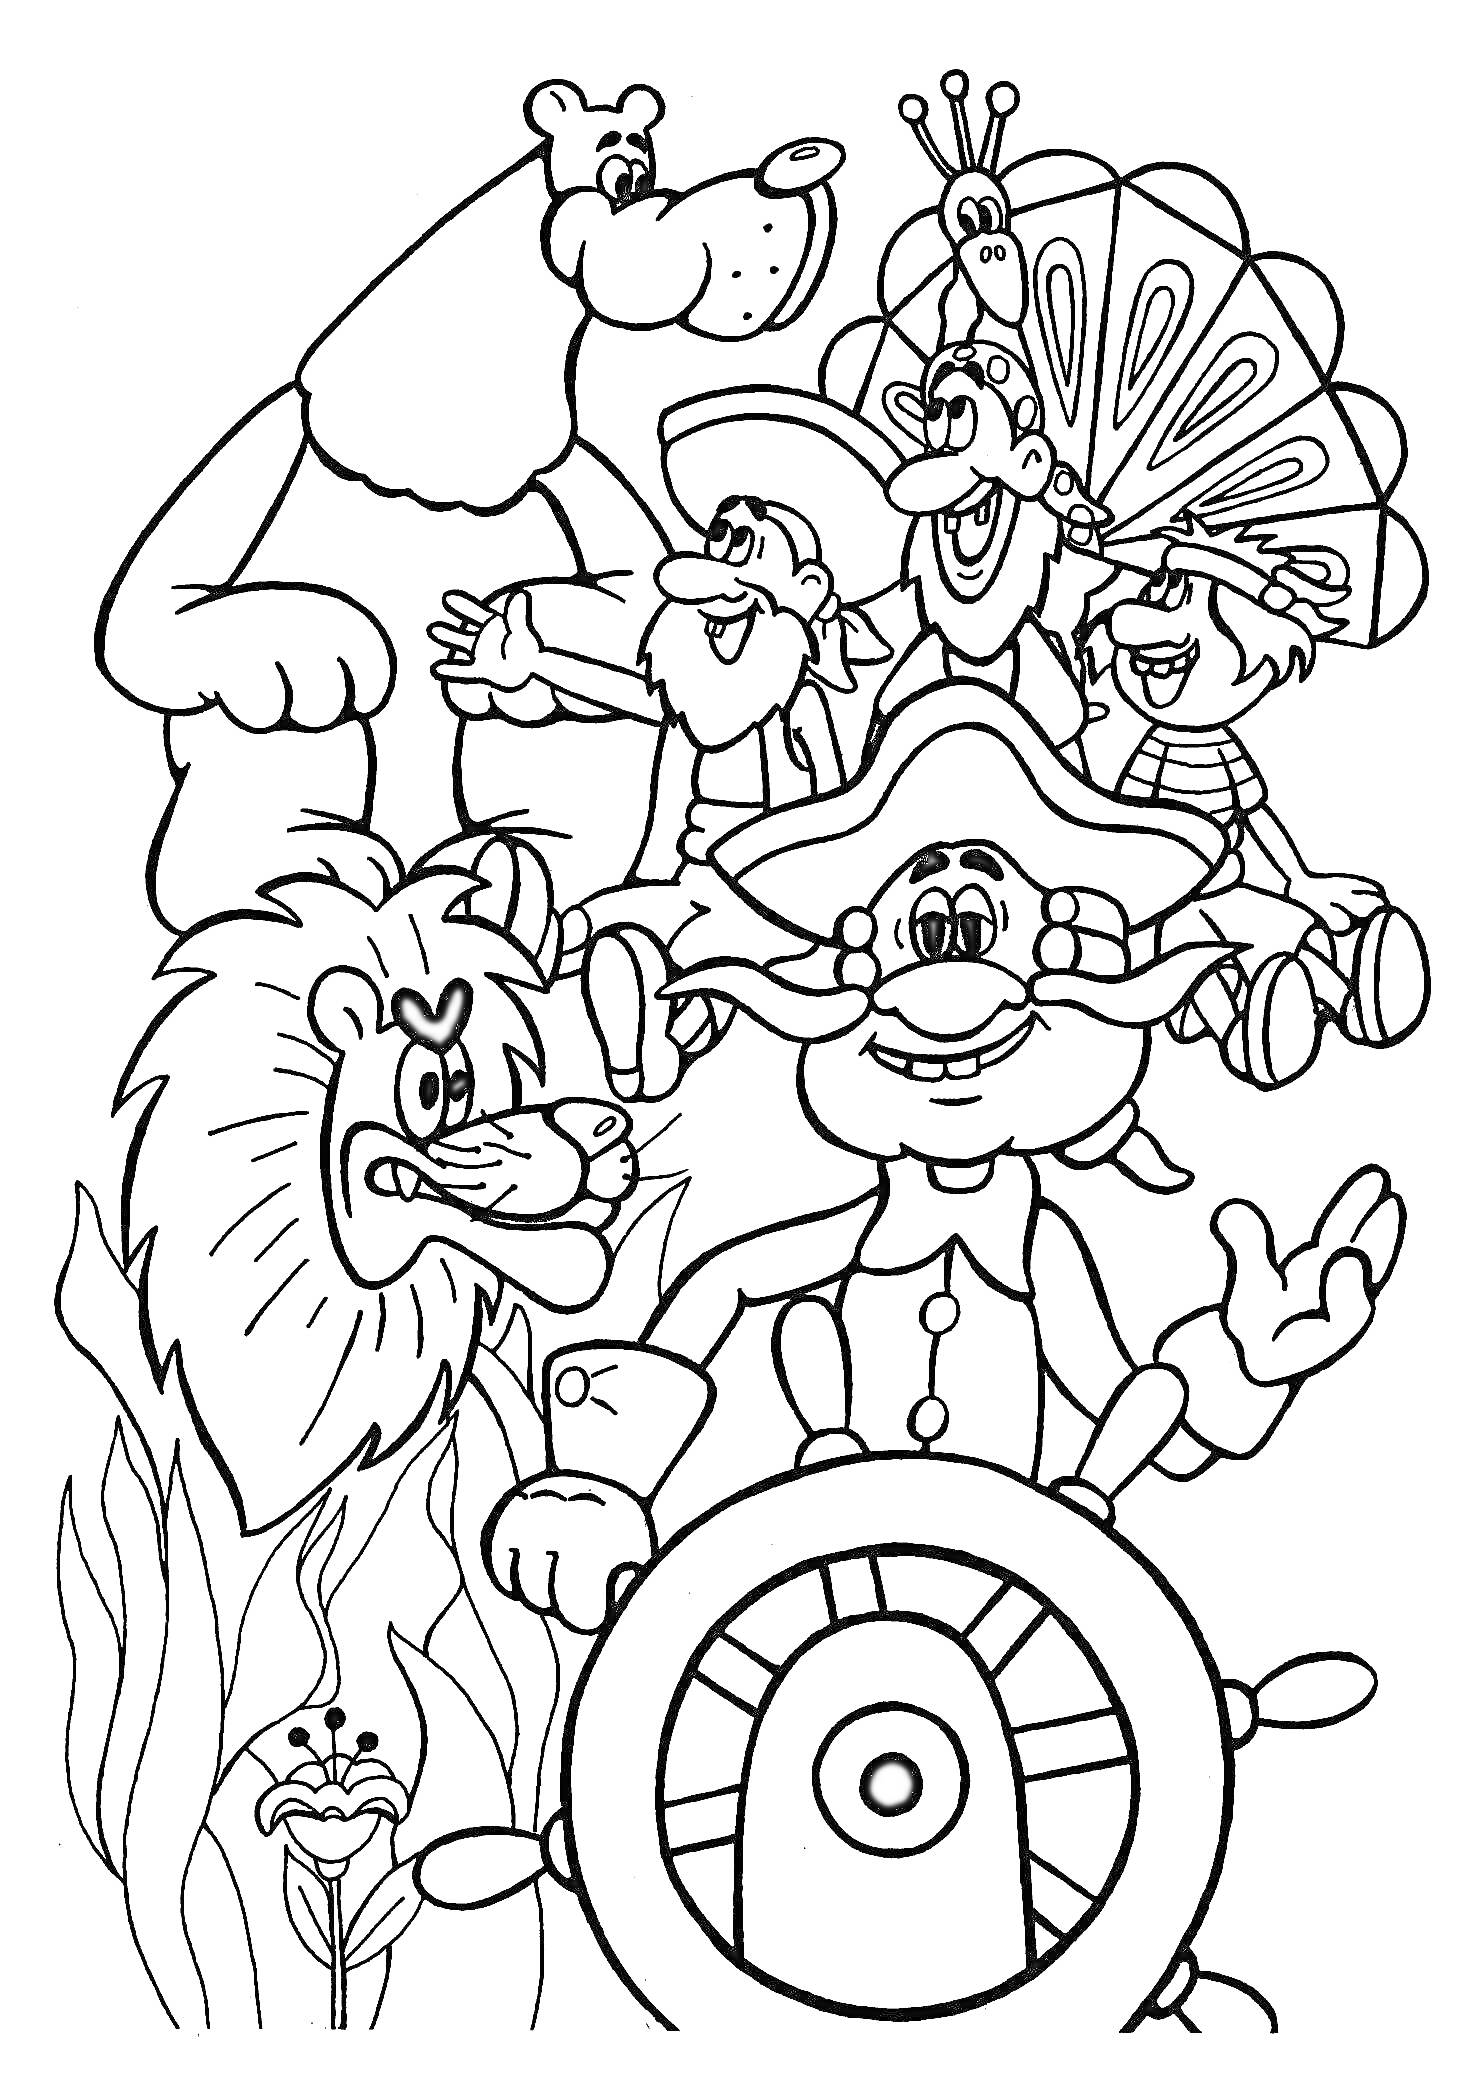 Раскраска Барон Мюнхгаузен с капитанским штурвалом, лев, медведь, павлин, три человечка